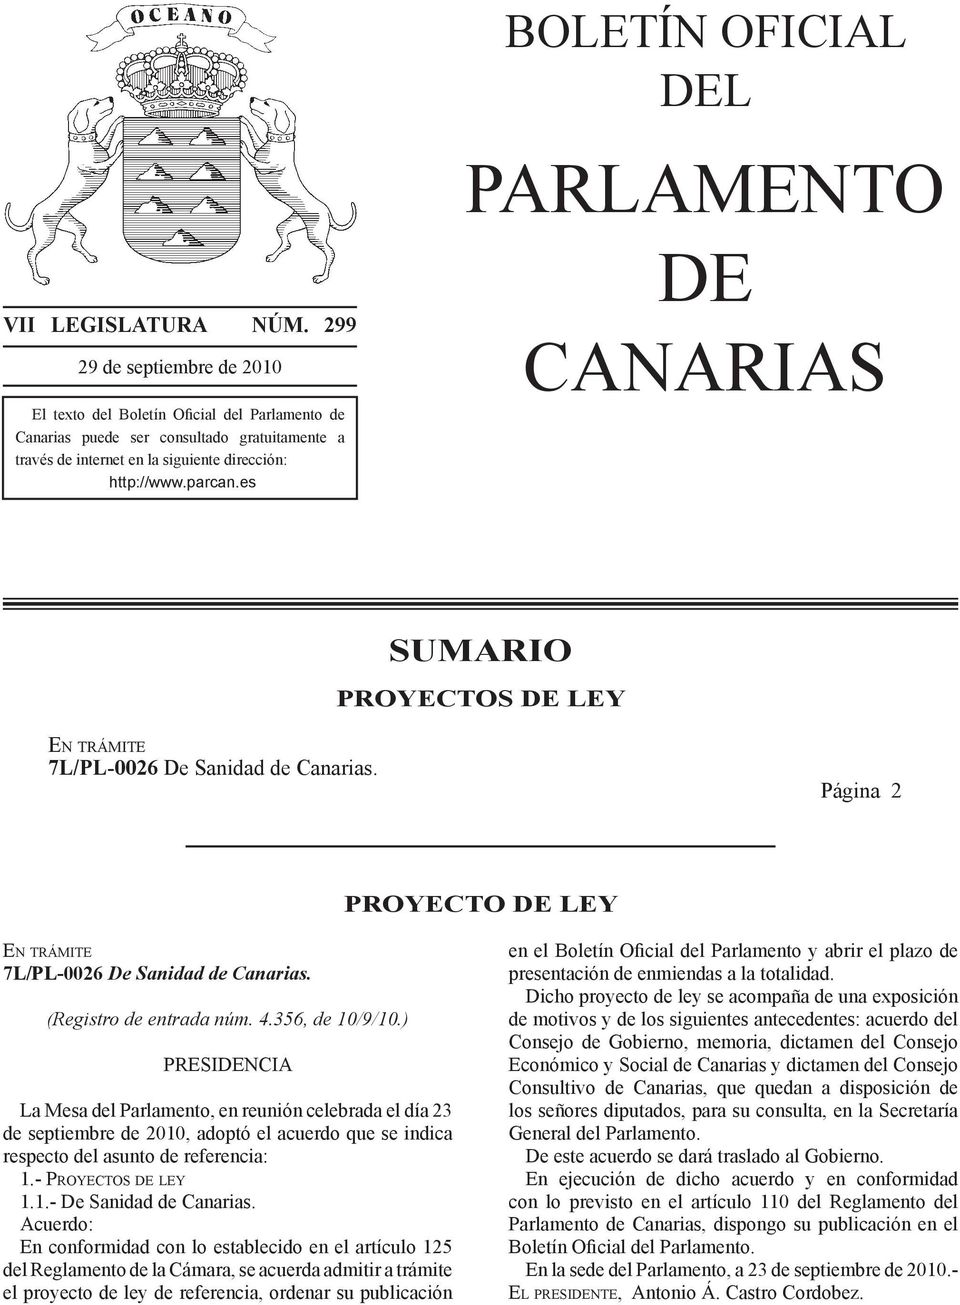 es PARLAMENTO DE CANARIAS SUMARIO PROYECTOS DE LEY En trámite 7L/PL-0026 De Sanidad de Canarias. Página 2 PROYECTO DE LEY En trámite 7L/PL-0026 De Sanidad de Canarias. (Registro de entrada núm. 4.